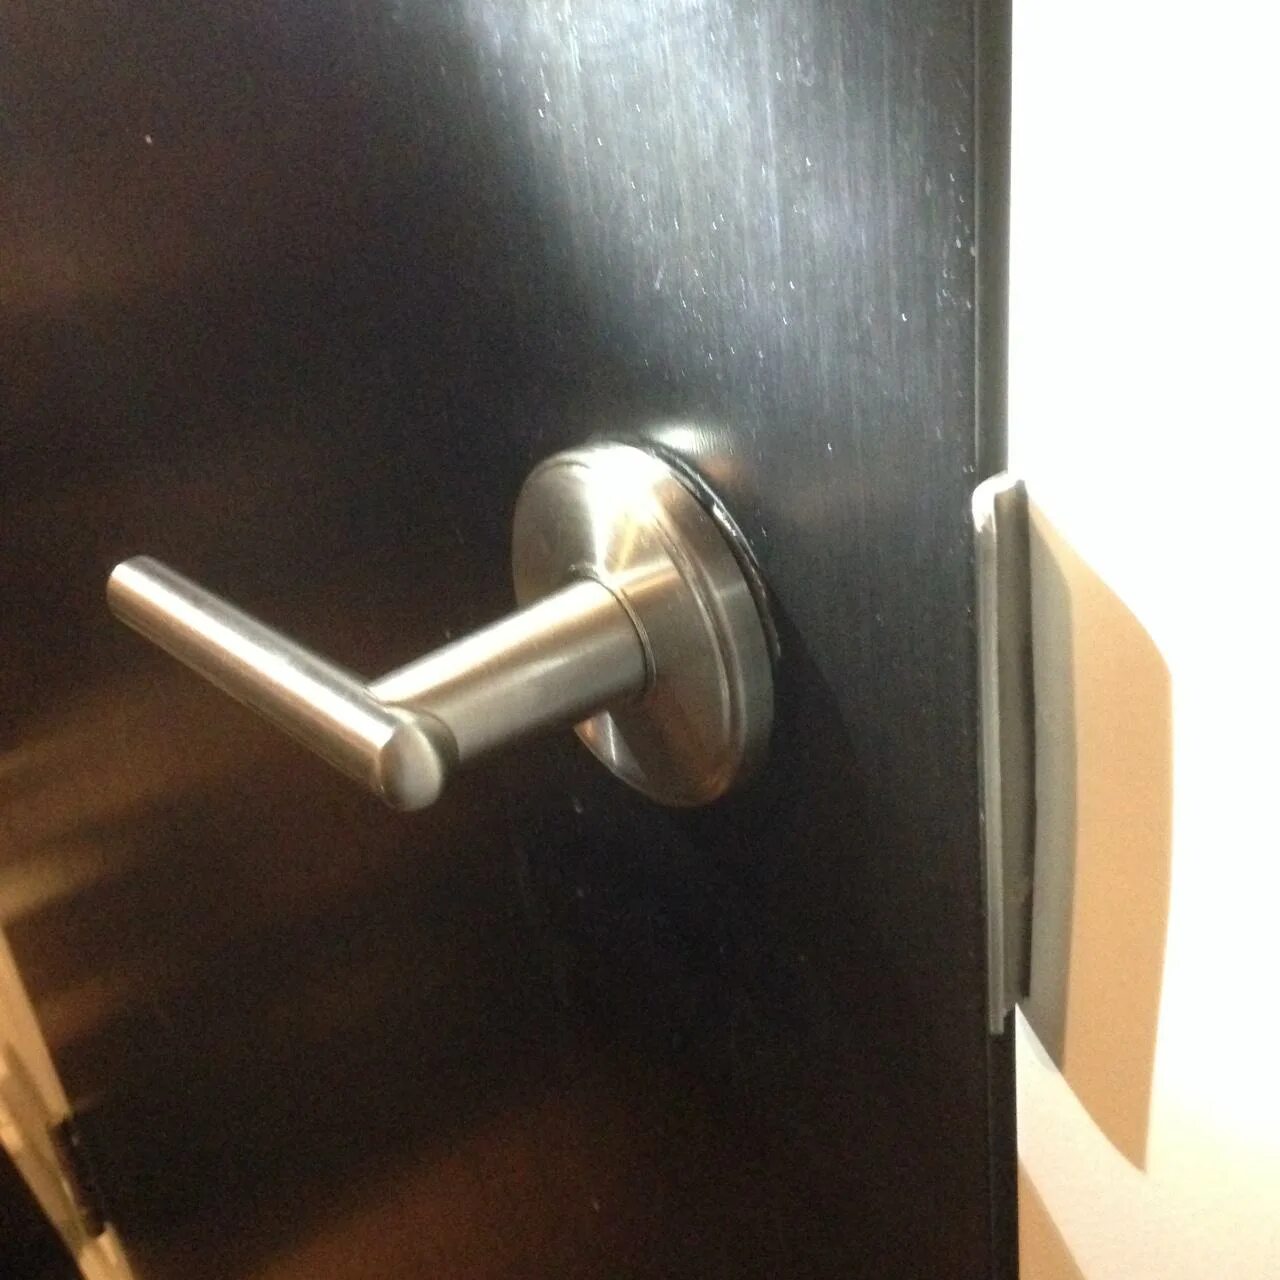 Через дверную ручку. Дверная ручка с защелкой для входной двери без замка. Дверная ручка с защелкой для входной двери. Ручка дверная для входной металлической двери с защелкой. Дверная ручка для входной двери без замка т 5.